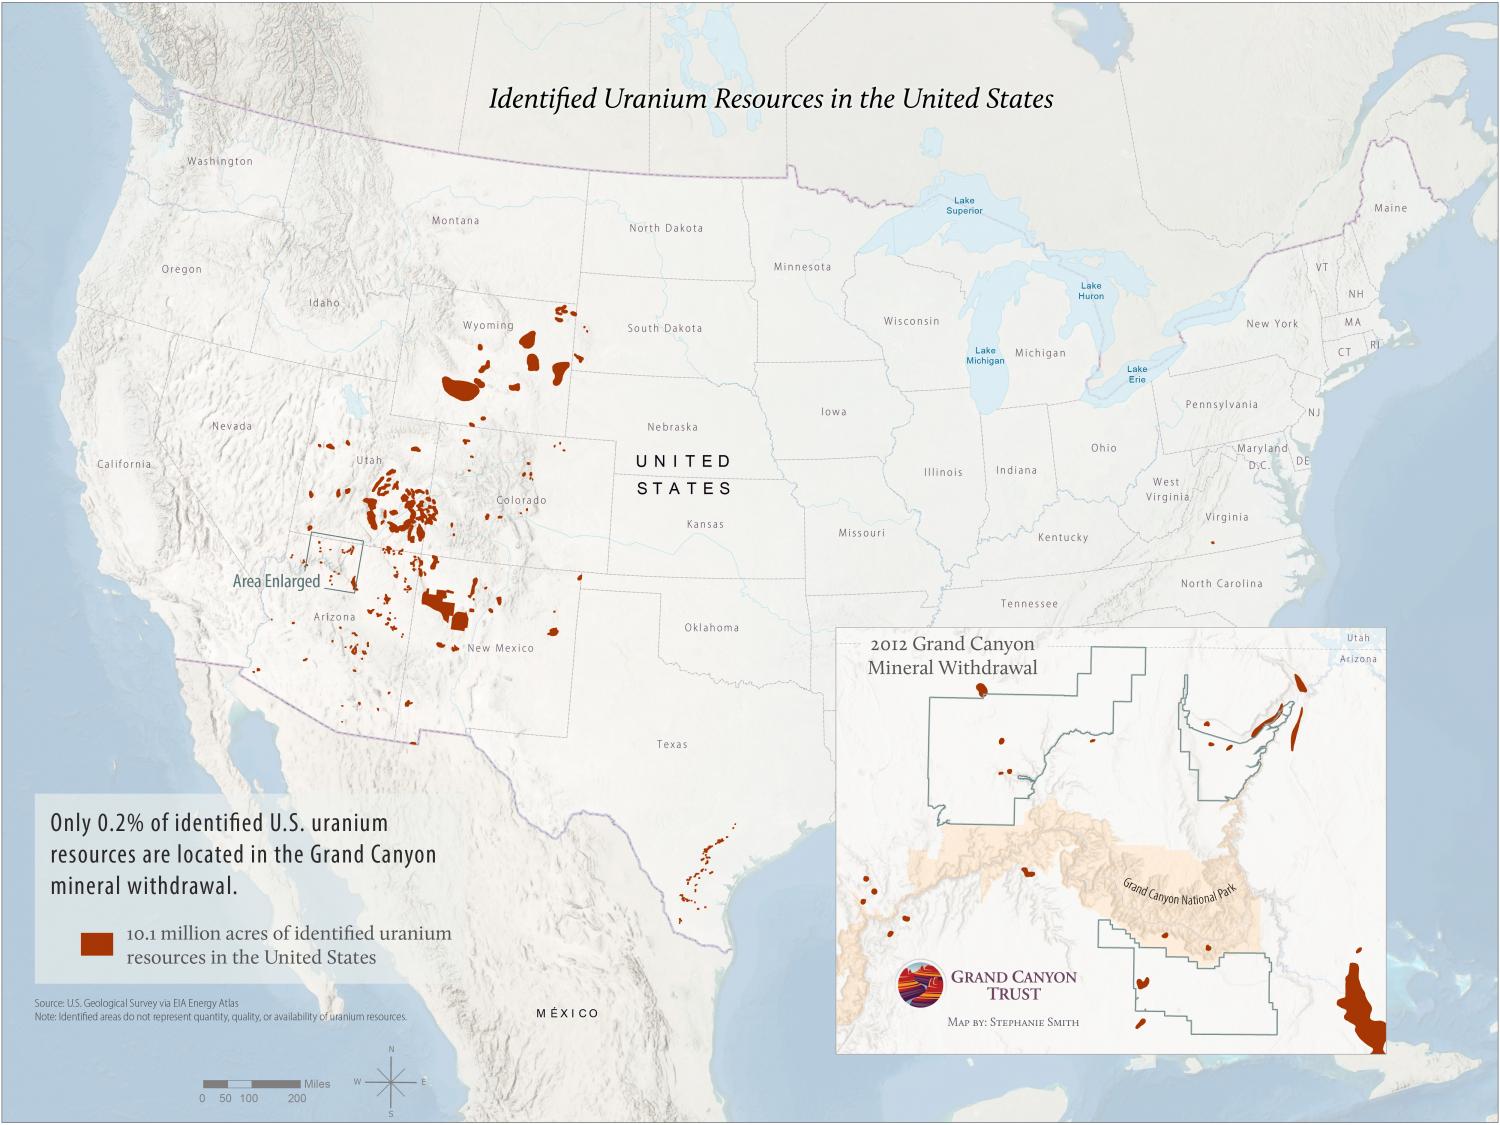 Uranium resources in the United States